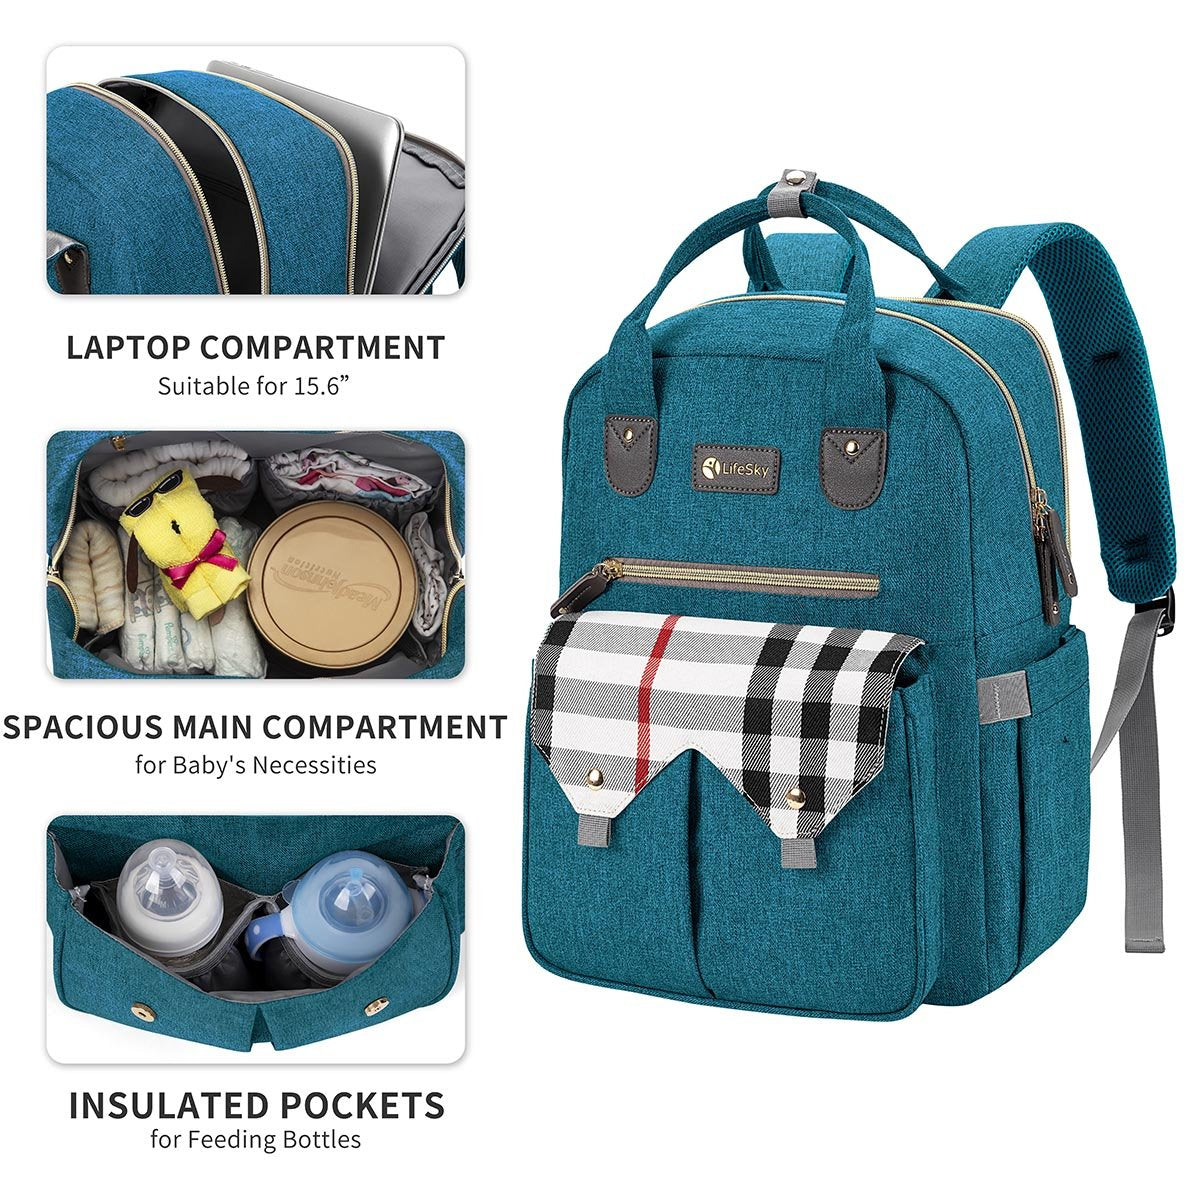 LifeSky<sup>&reg;</sup> Diaper Bag Backpack